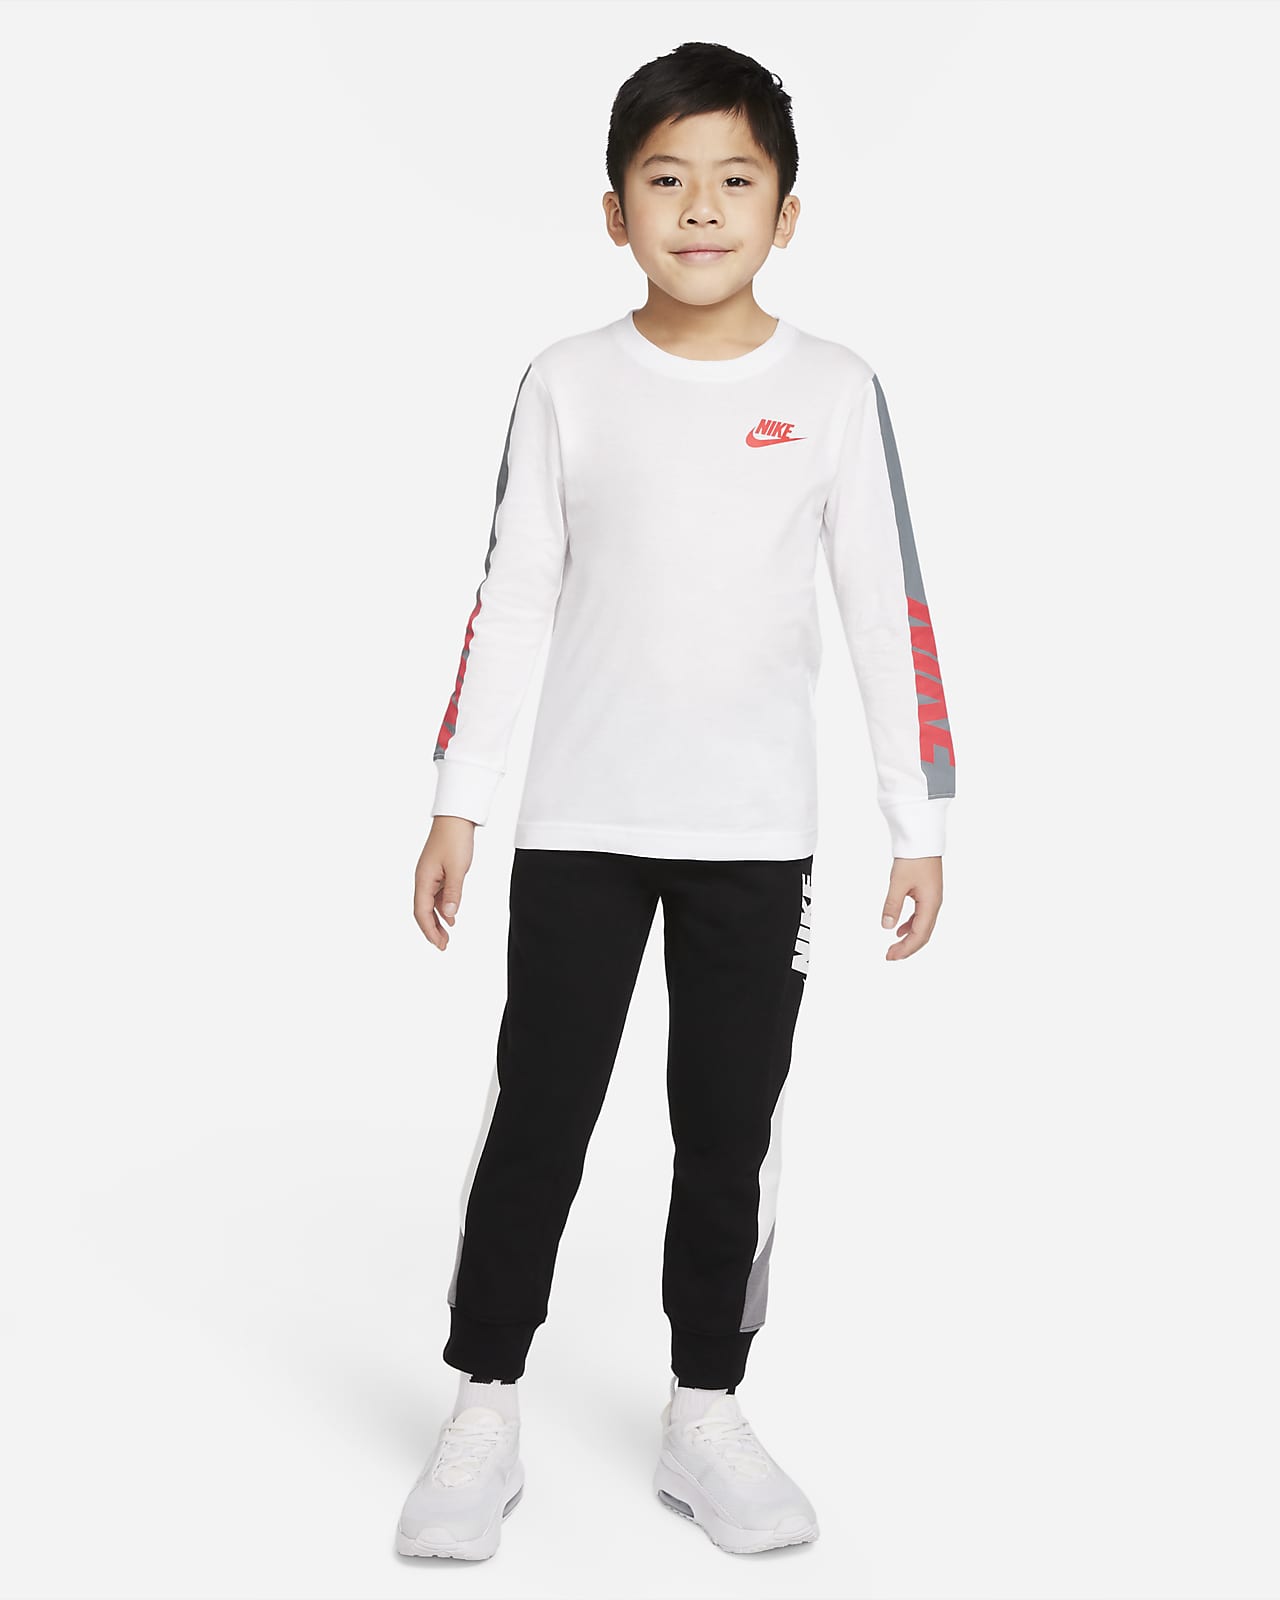 de manga larga para niños de preescolar talla pequeña Nike.com